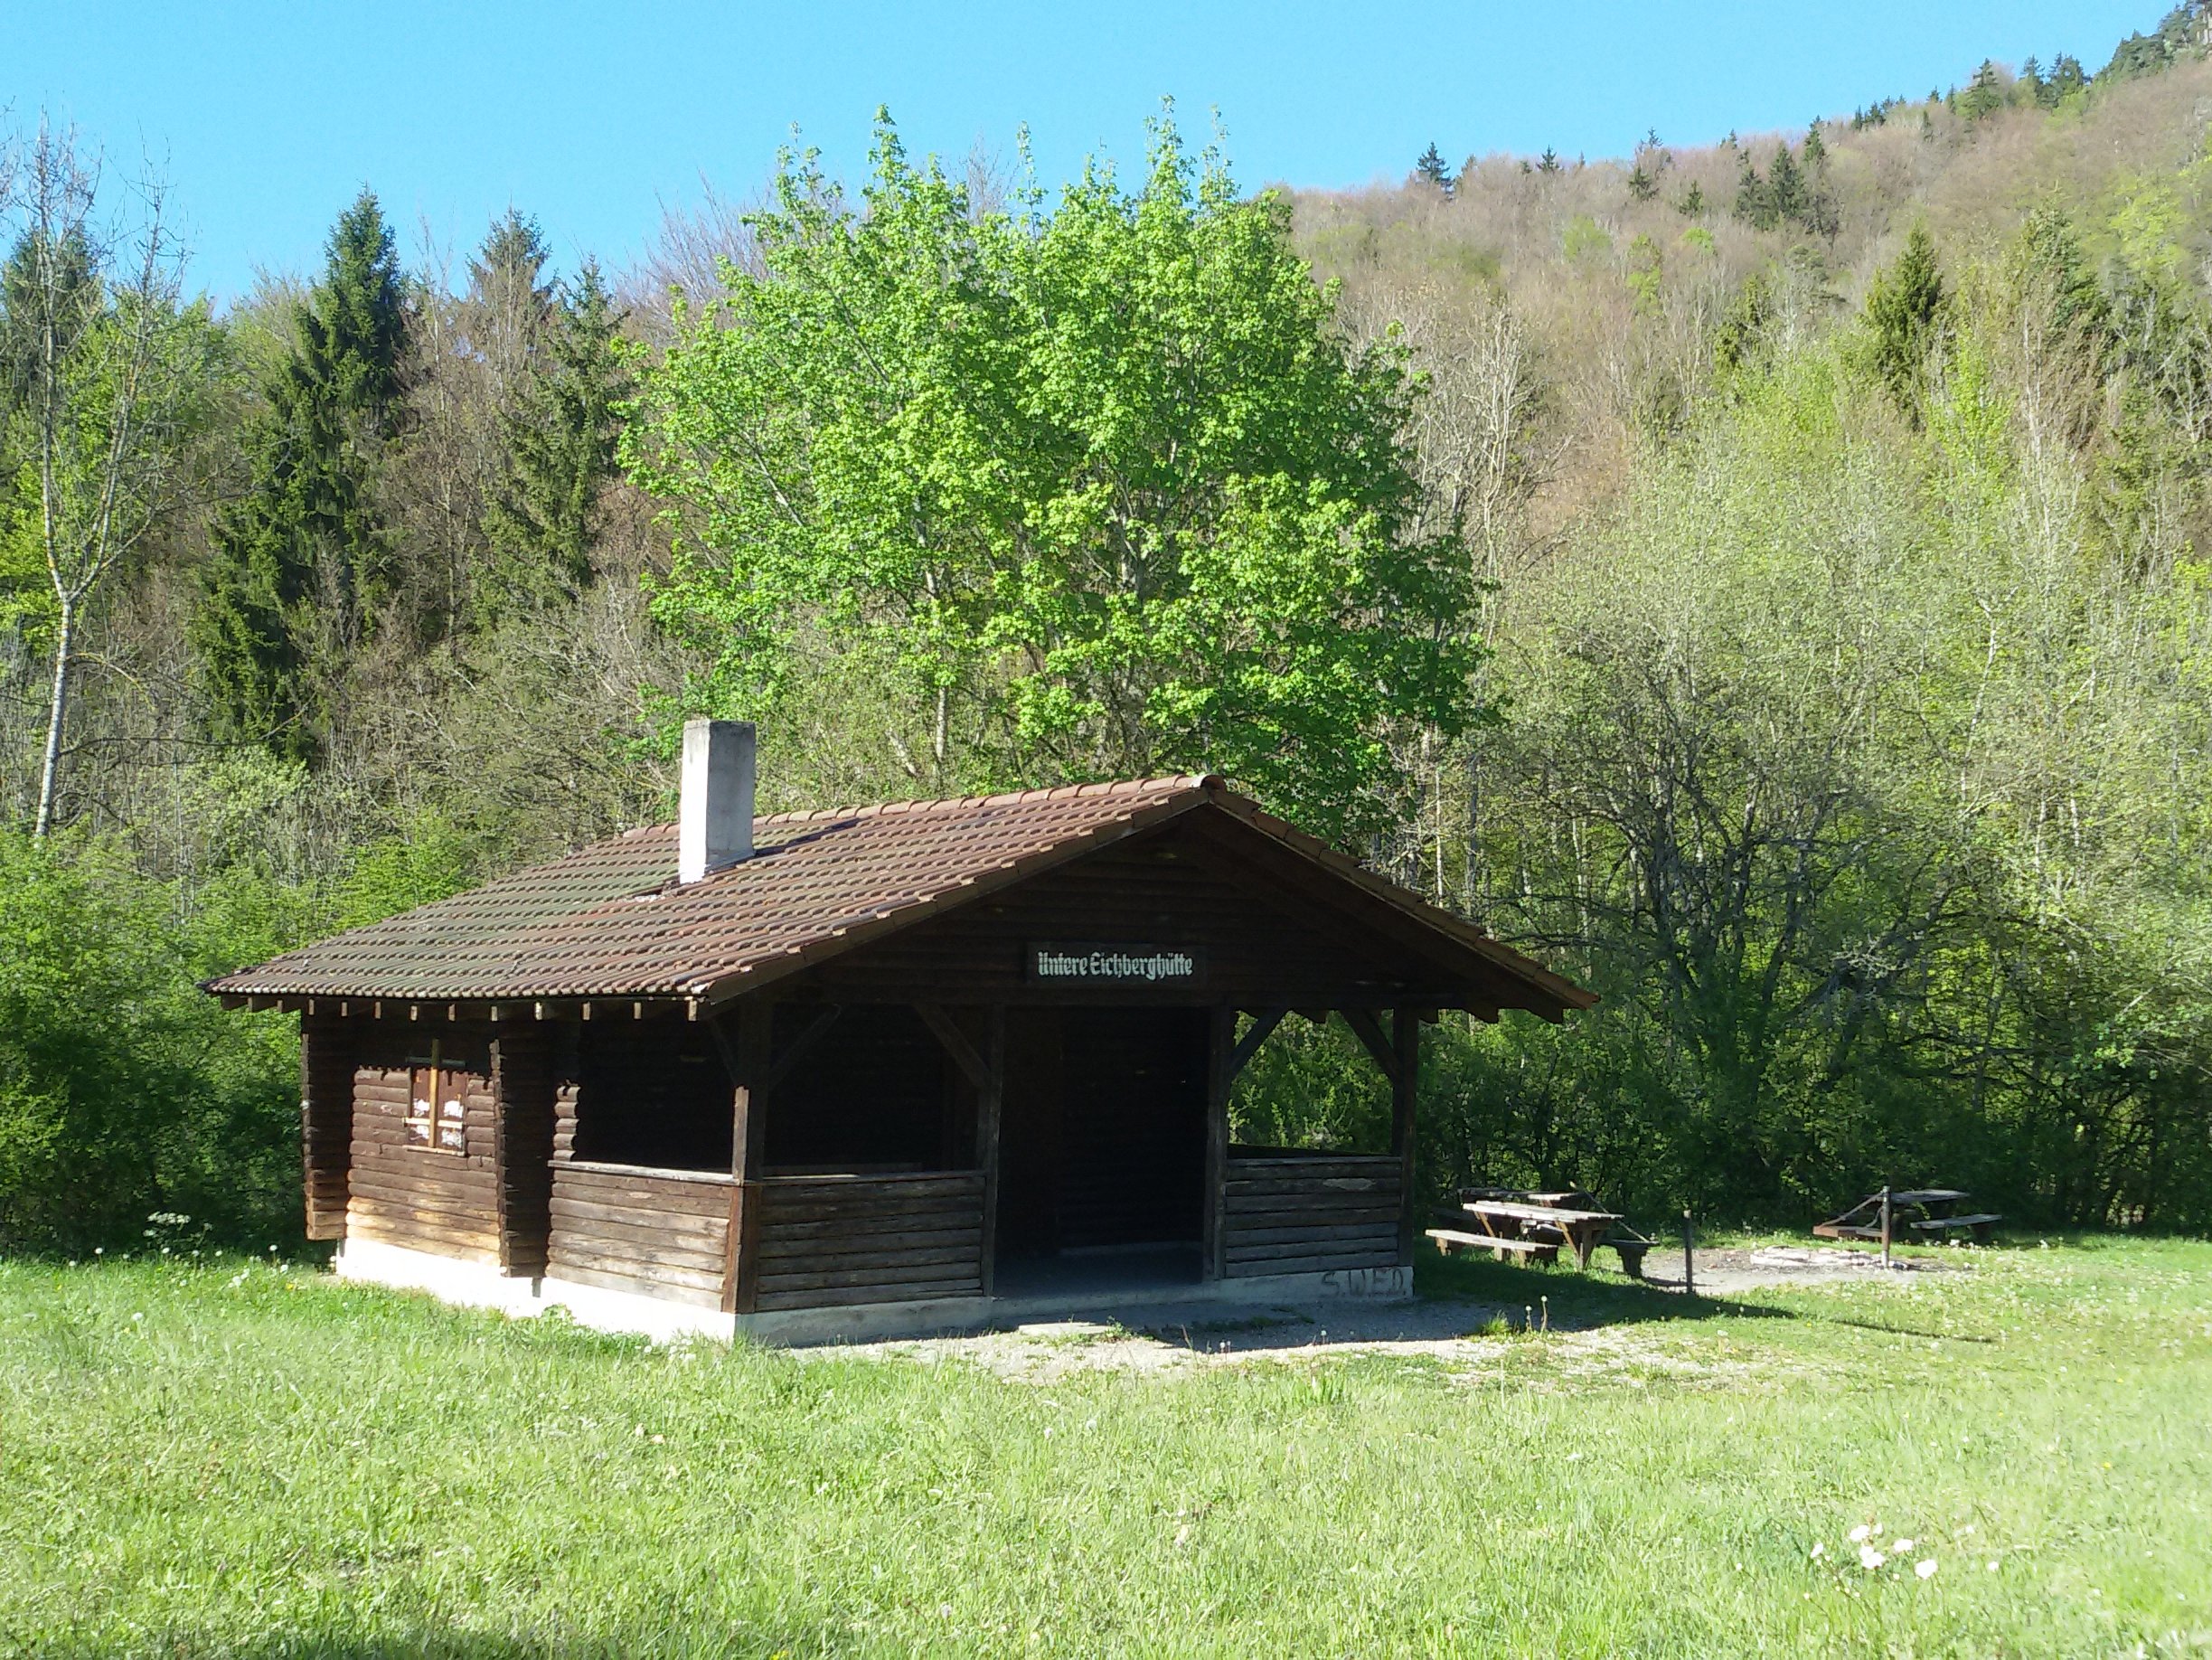 Untere Eichberghütte